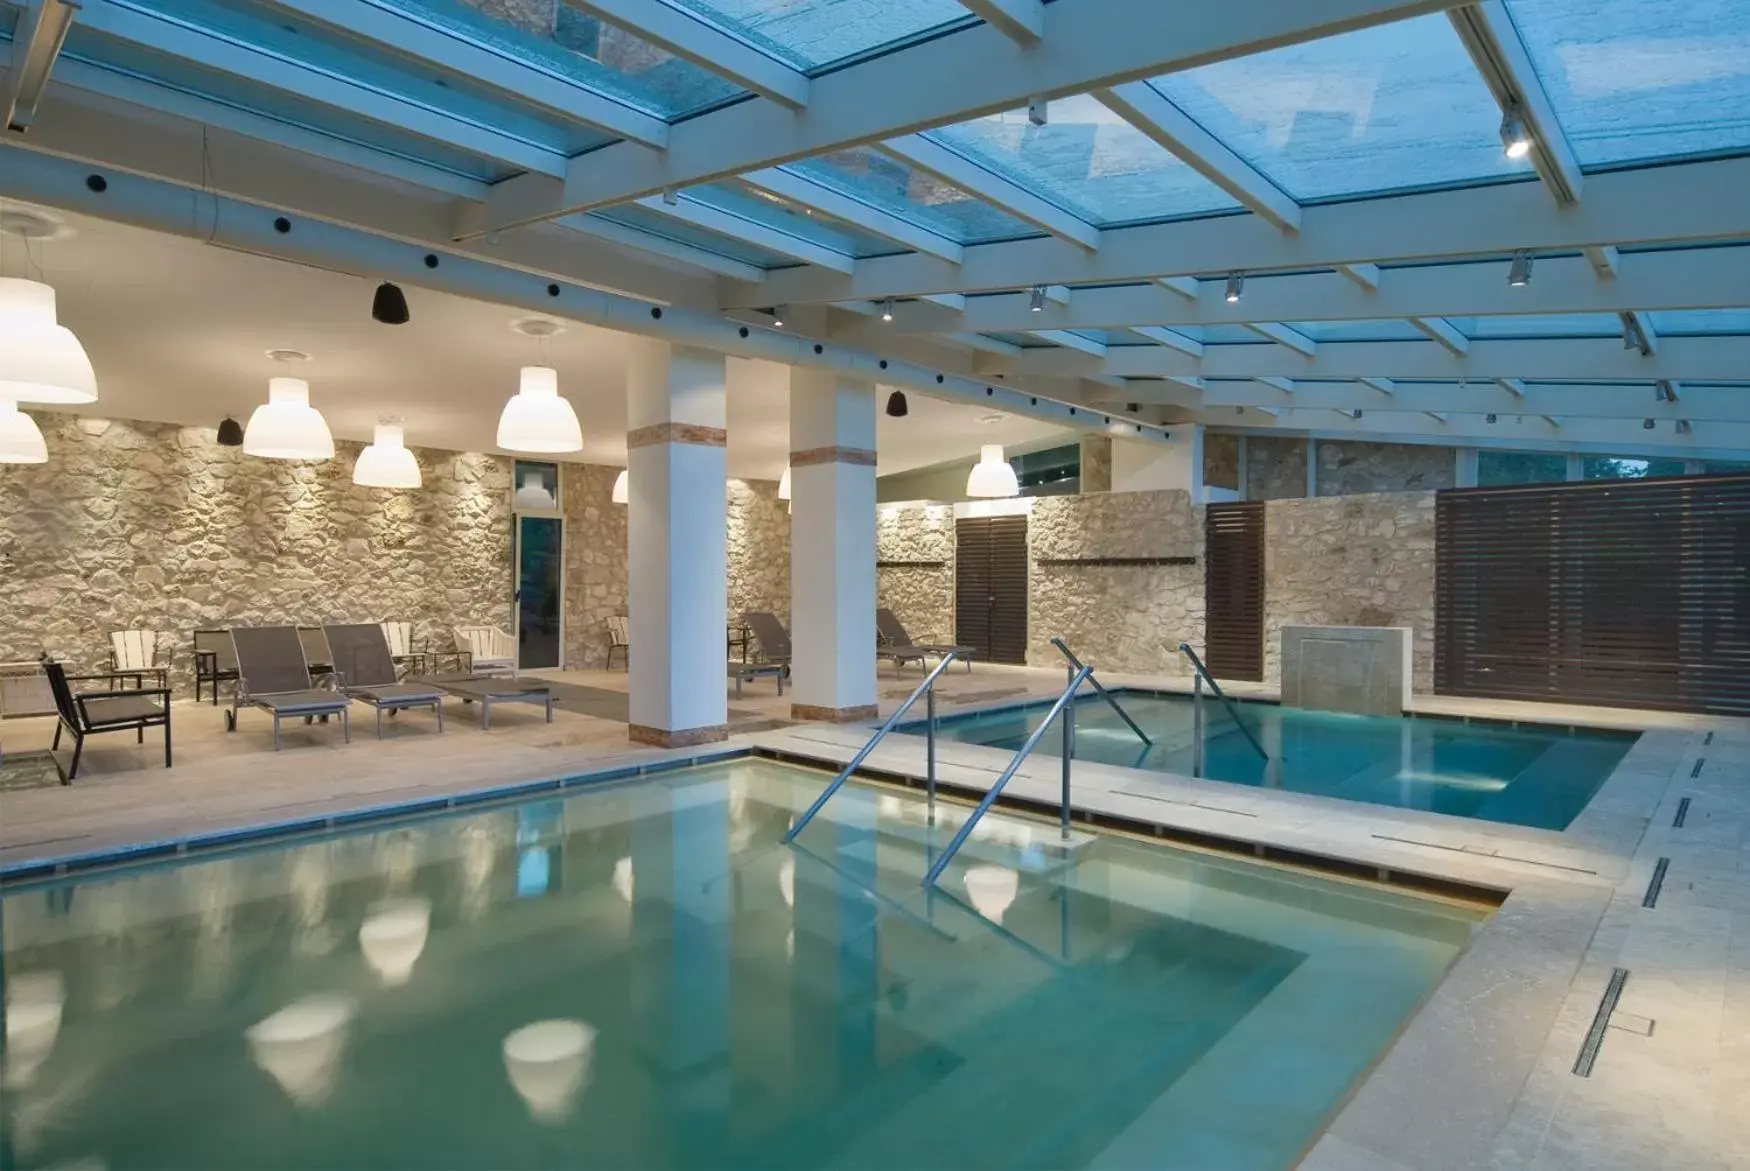 Hot Spring Bath, Swimming Pool in Albergo Le Terme